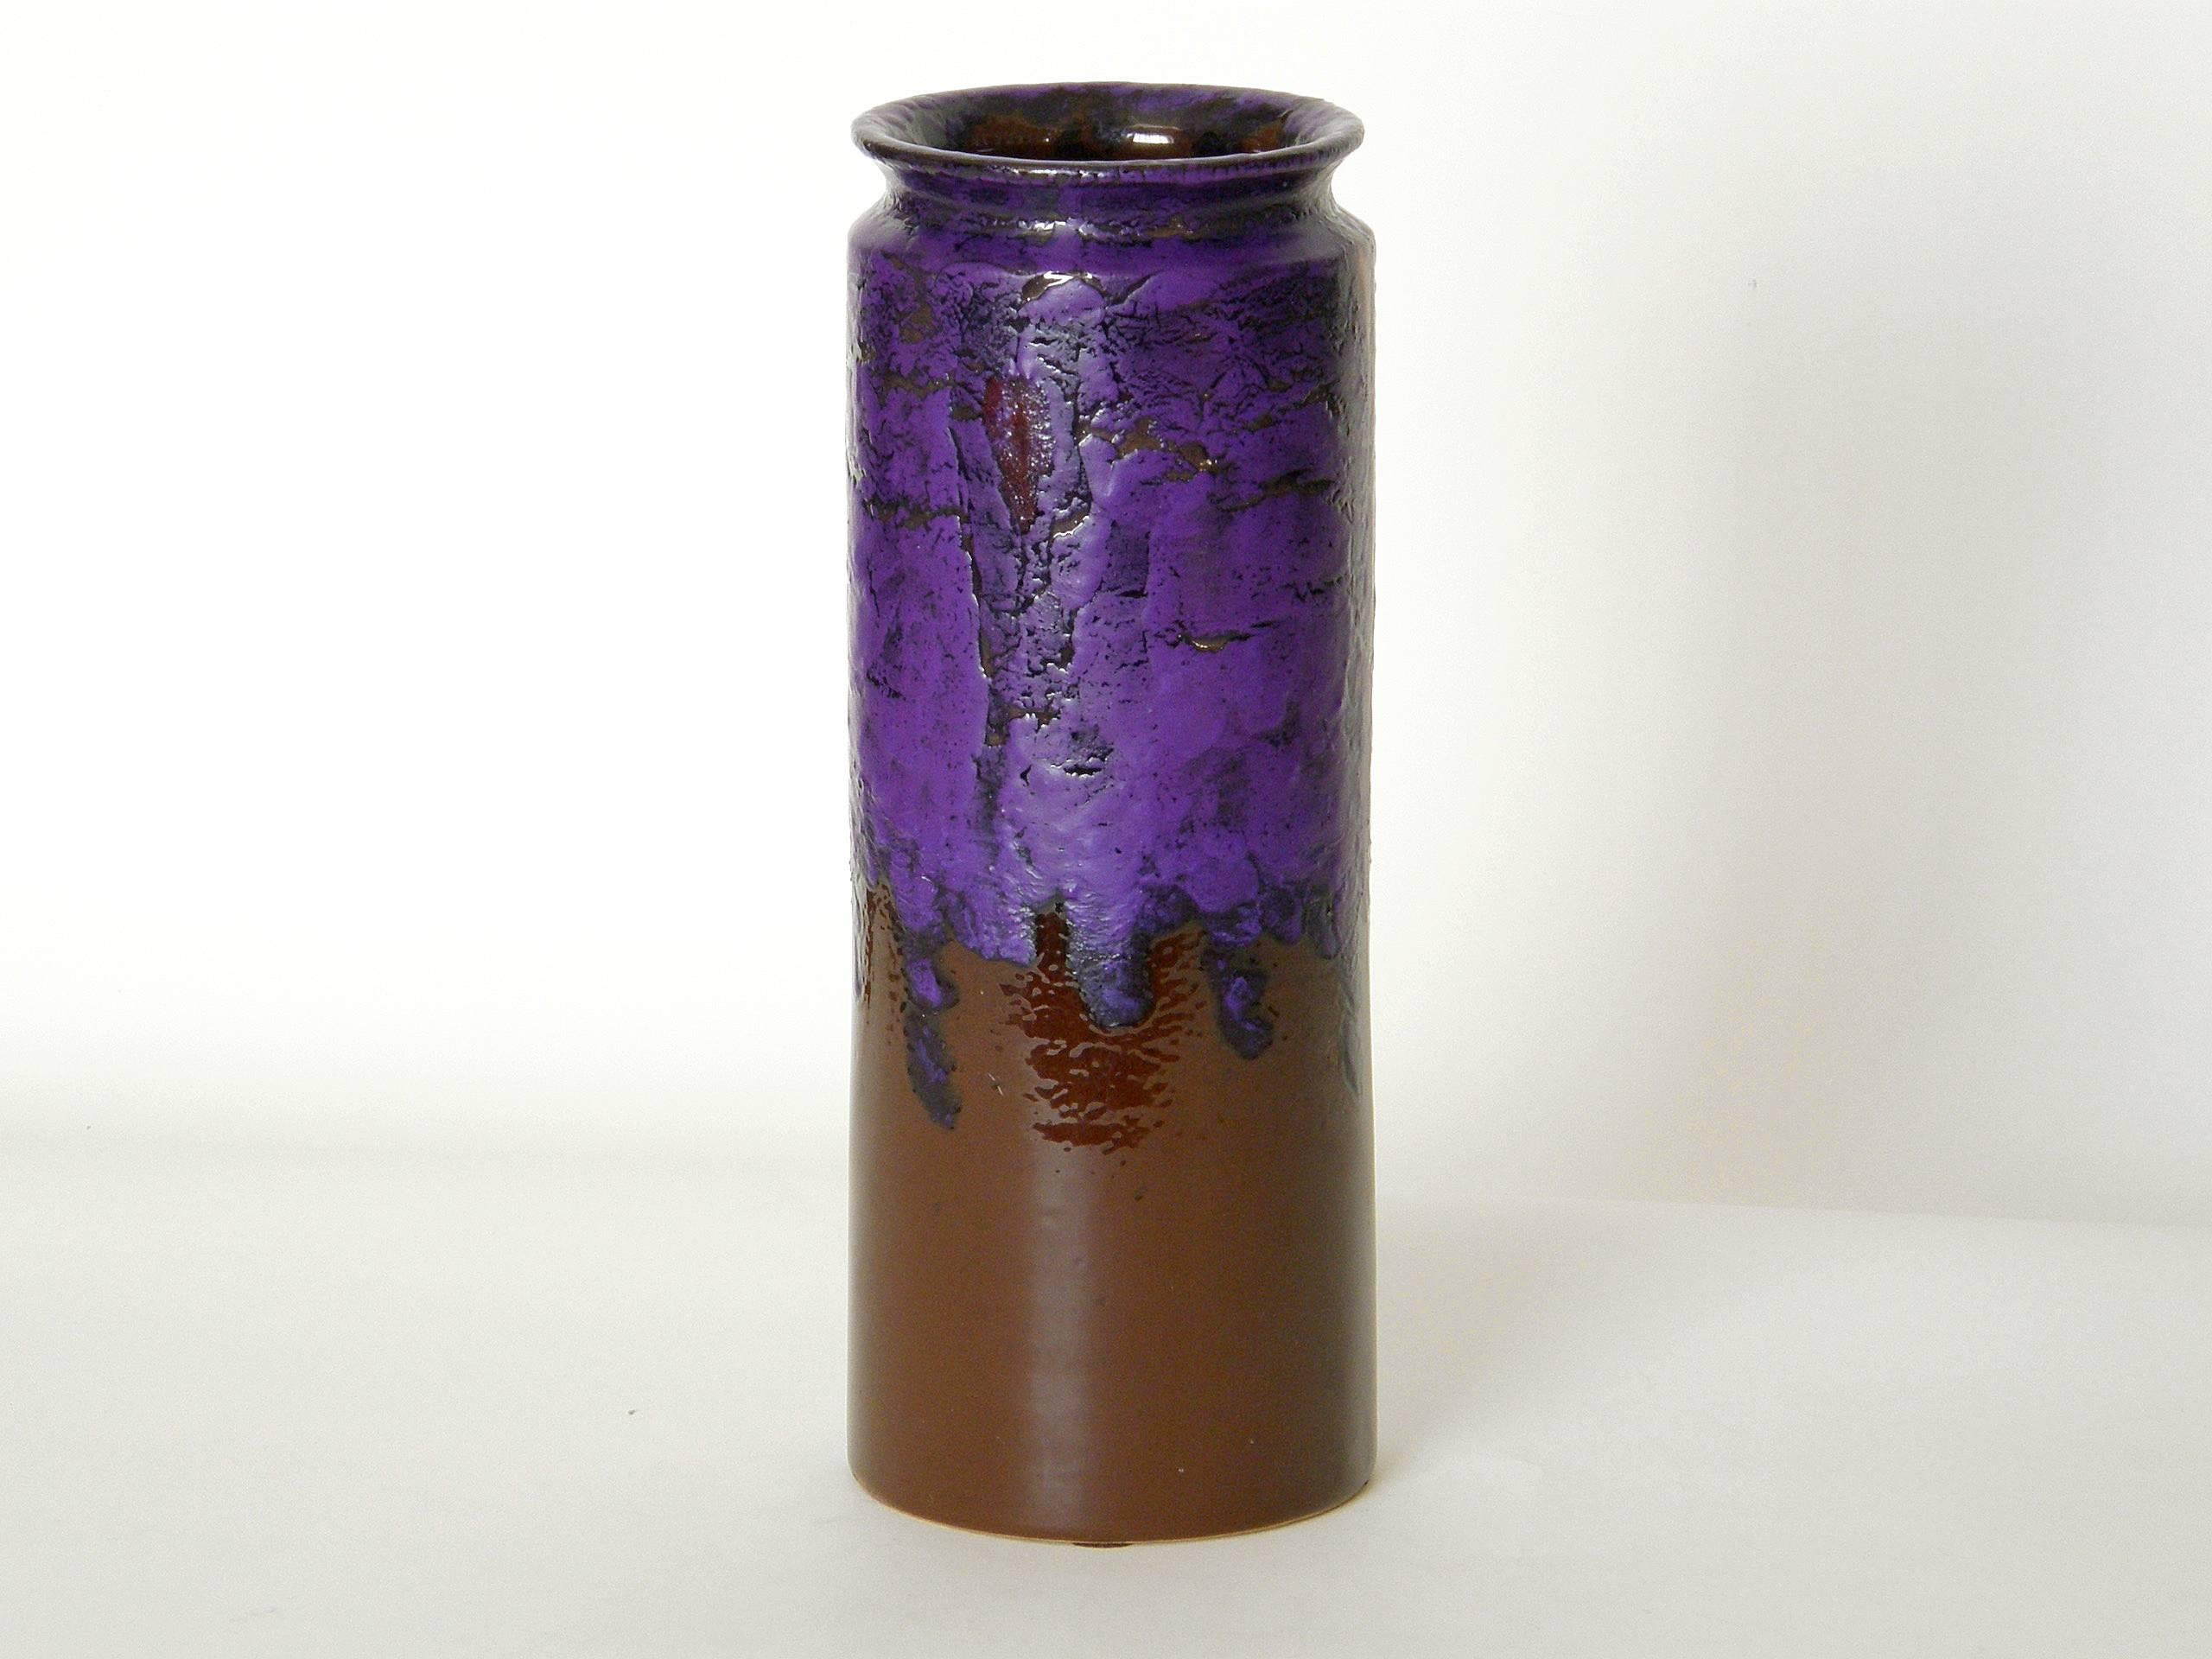 Keramikvase, hergestellt in Italien von Bitossi für Rosenthal-Netter. Die lebhafte violette Lavaglasur mit leuchtend roten Akzenten fließt über die schokoladenbraune Grundfarbe. Dies ist ein klassisches Beispiel für moderne italienische Keramik aus